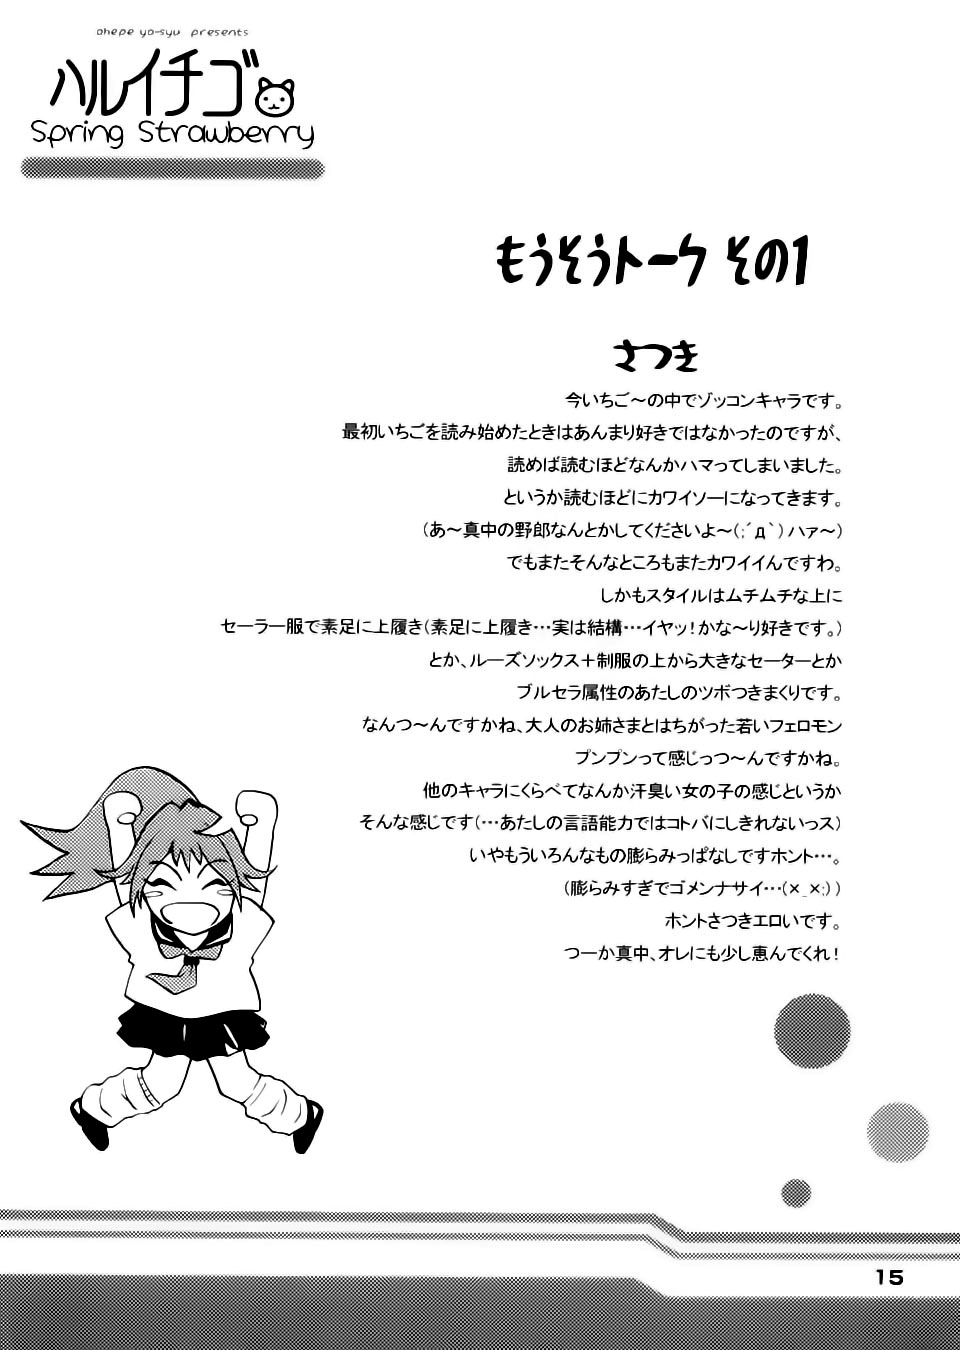 [Yoshu Ohepe (Amazake Hatosyo-ten)] Haru Ichigo Vol. 01 | Spring Strawberry Vol. 01 (Ichigo 100%) [MHnF][Spanish] 